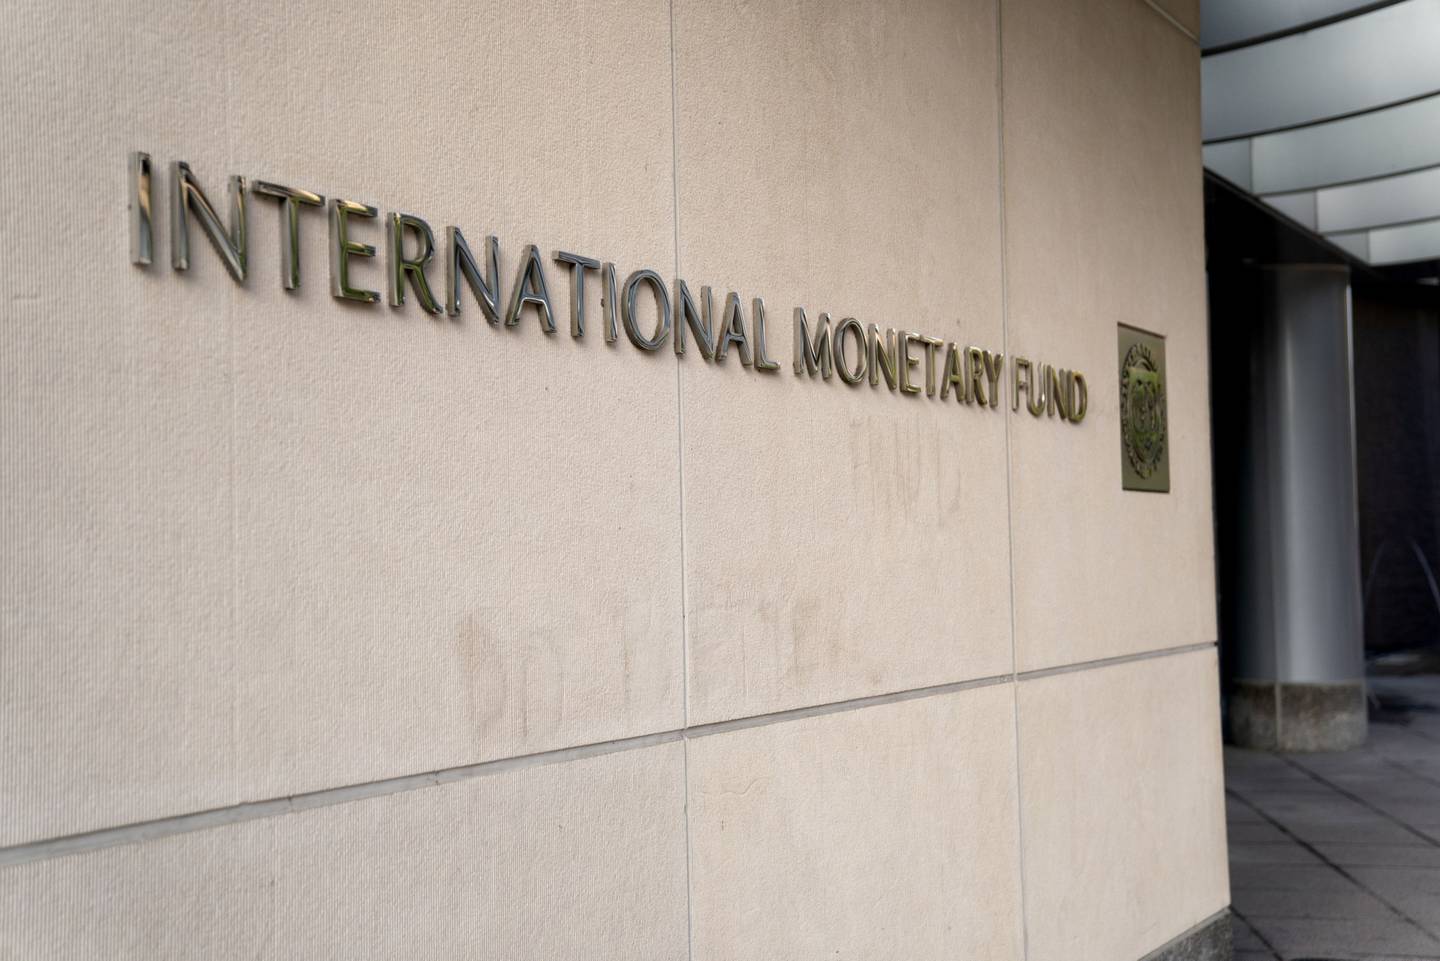 Oficinas del Fondo Monetario Internacional en Washington